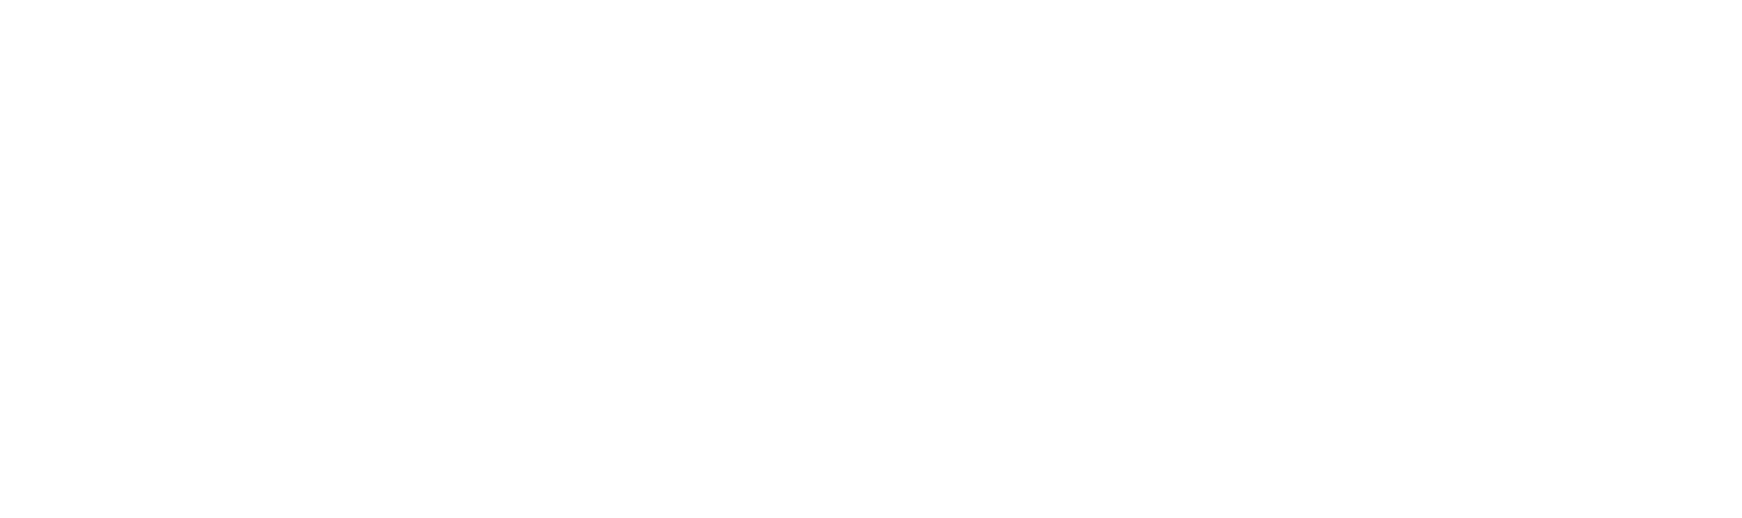 Stevens Paint & Blinds Logo